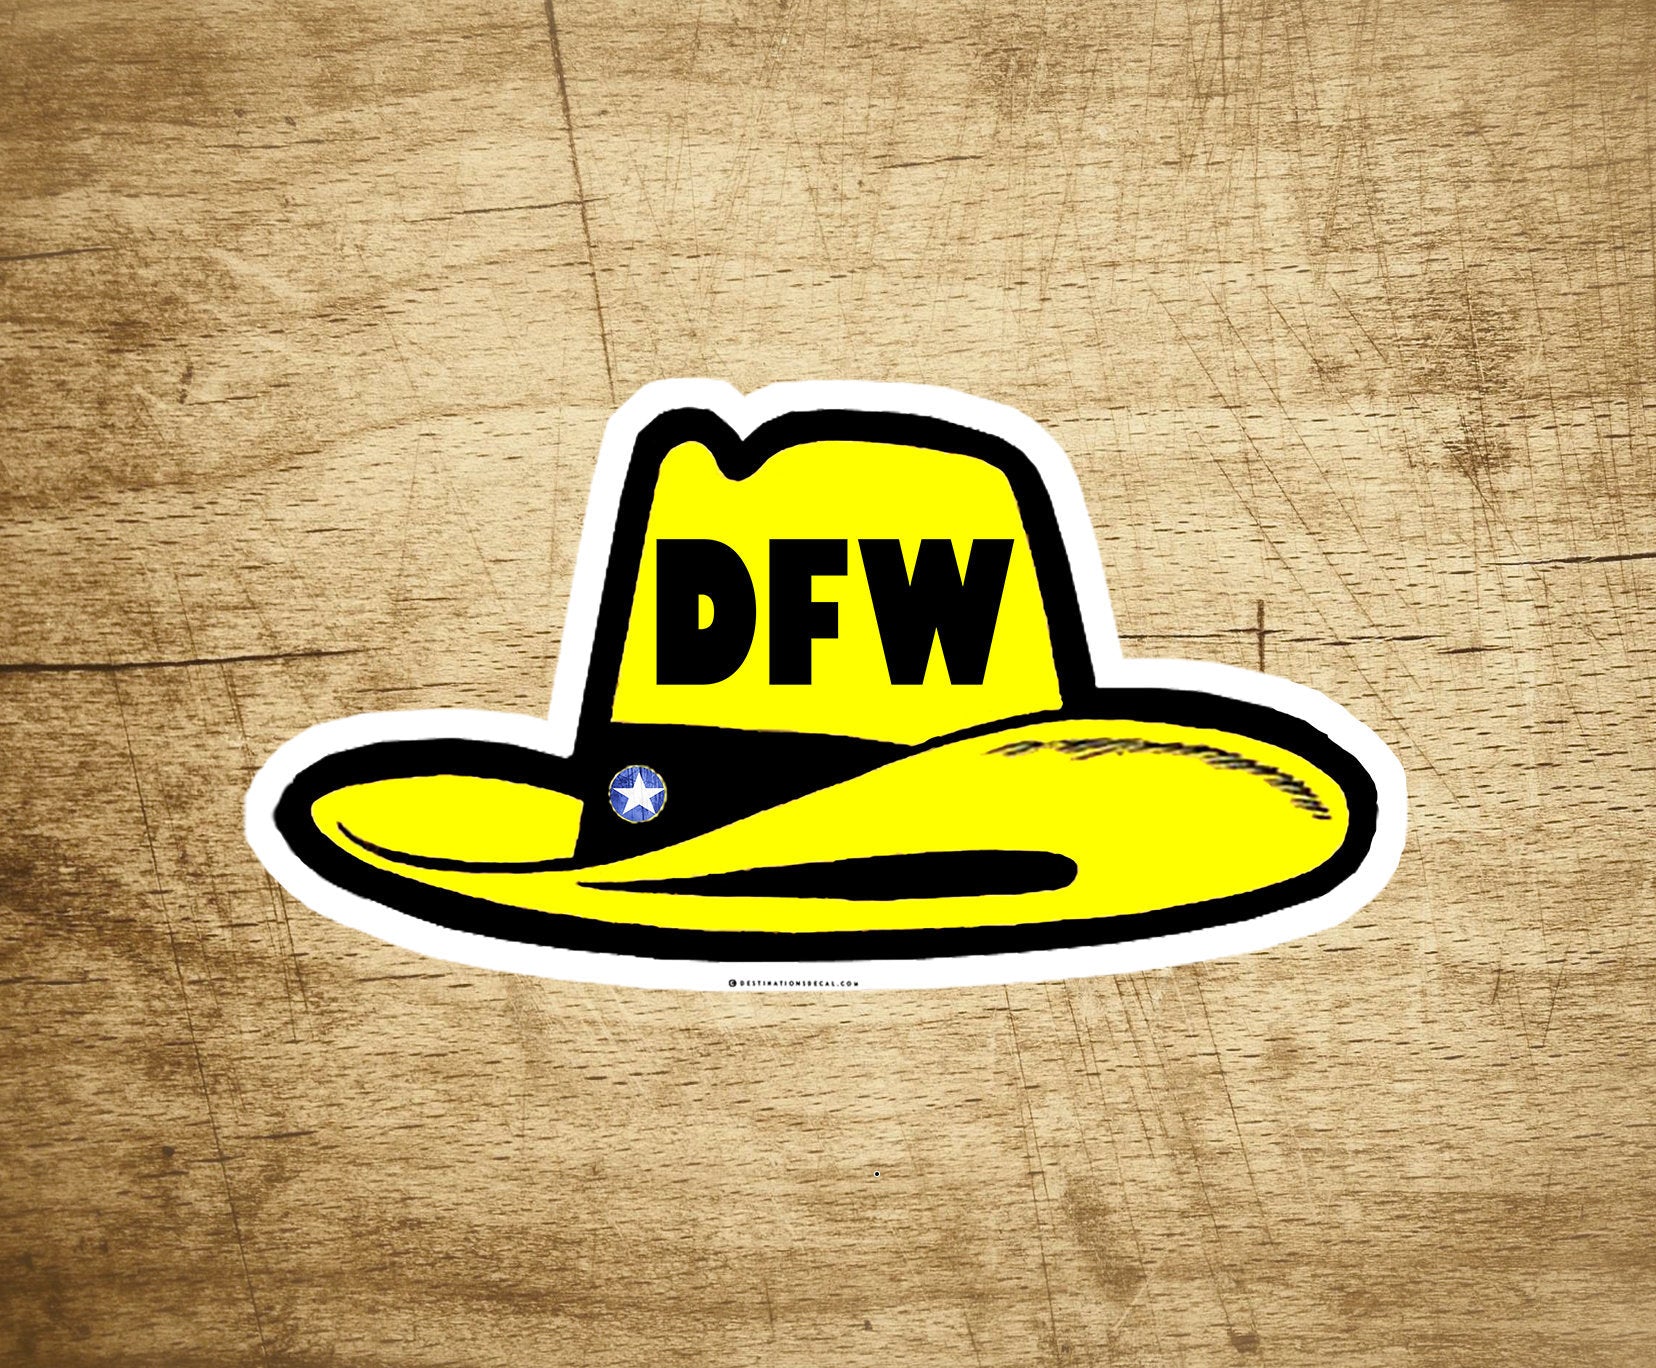 DFW Dallas Fort Worth Decal Sticker Texas Cowboy Hat 3.75" x 2"